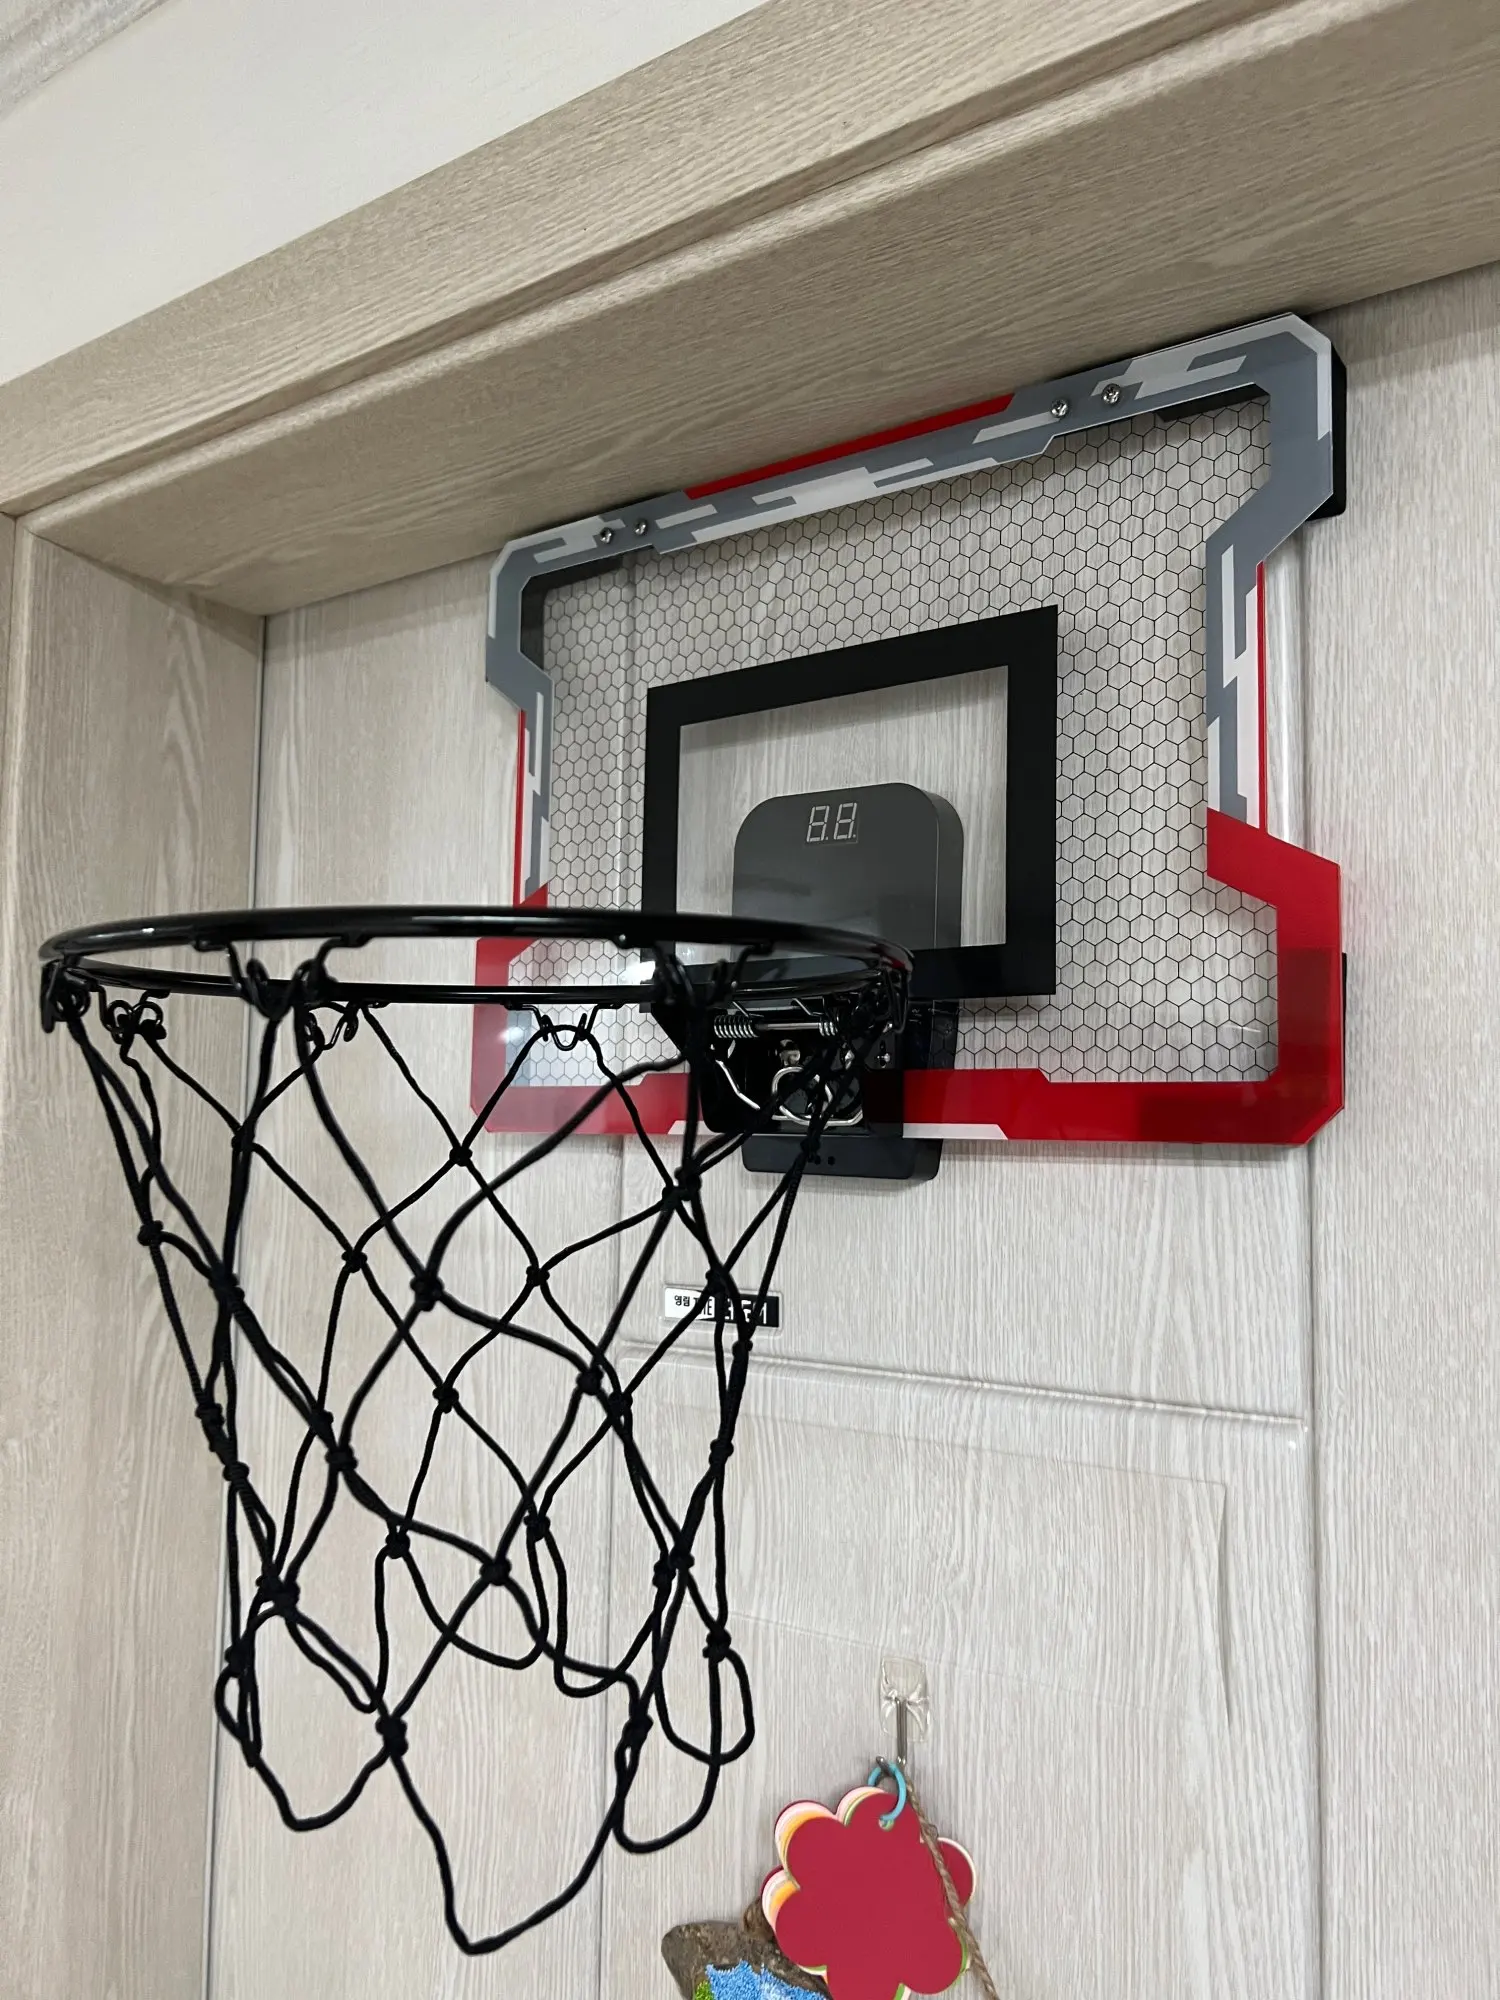 Panier de basket avec Score Electronique